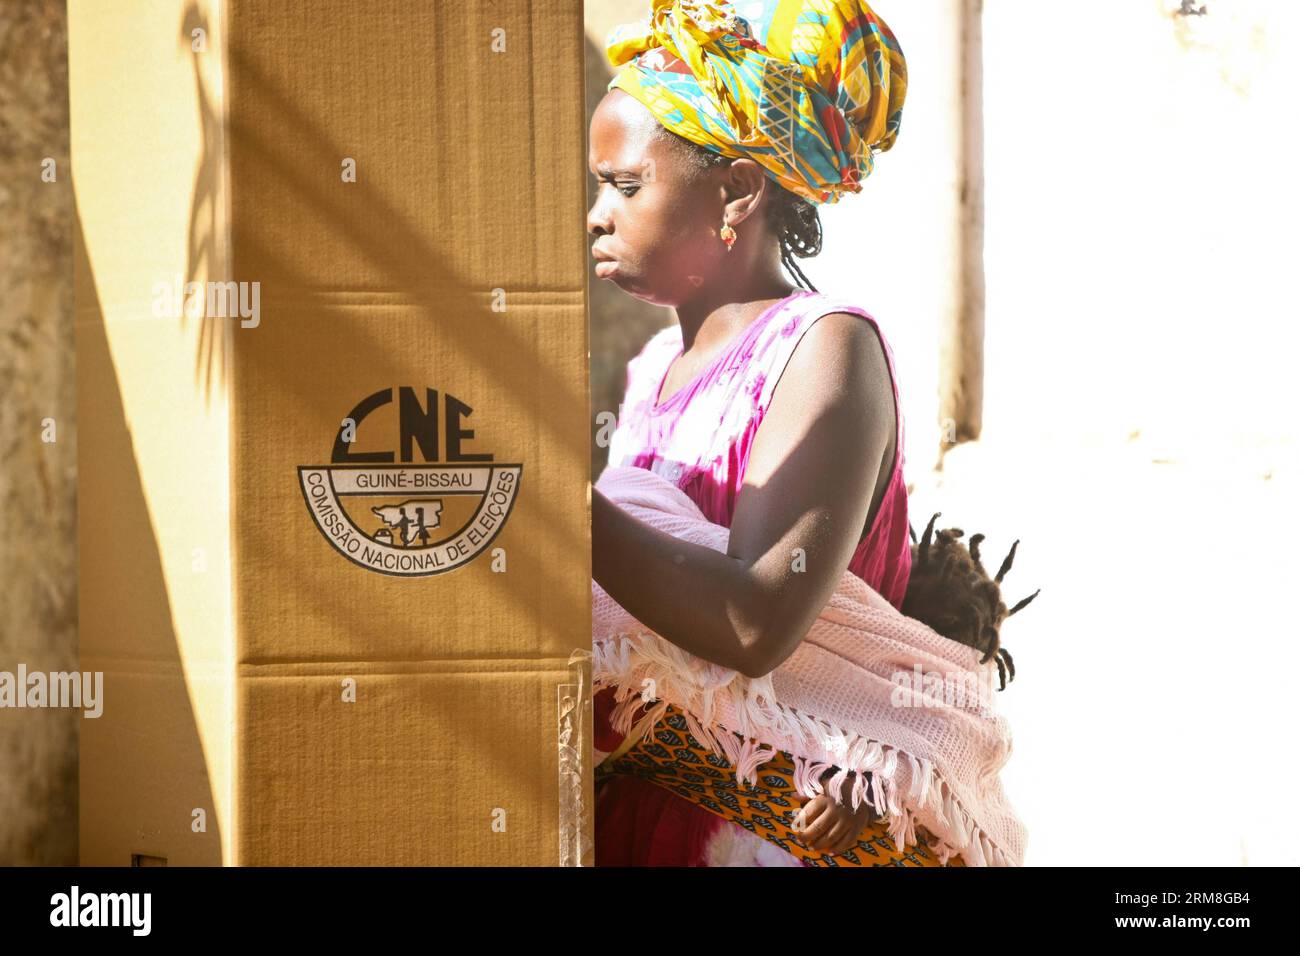 Una donna si prepara a votare per le elezioni presidenziali a Bissau, capitale della Guinea Bissau, il 13 aprile 2014. Gli elettori in Guinea-Bissau hanno iniziato a votare domenica alle prime elezioni dopo un colpo di stato militare del 2012 che ha spodestato il presidente ad interim Raimundo Pereira e ha gettato nel caos il paese povero dell'Africa occidentale. (Xinhua/li Jing) (dzl) GUINEA BISSAU-ELEZIONE-VOTO PUBLICATIONxNOTxINxCHN una donna si prepara a esprimere il suo VOTO per LE ELEZIONI presidenziali a Bissau capitale della Guinea Bissau 13 aprile 2014 gli elettori in Guinea Bissau hanno iniziato a votare domenica nel primo ELECTI Foto Stock